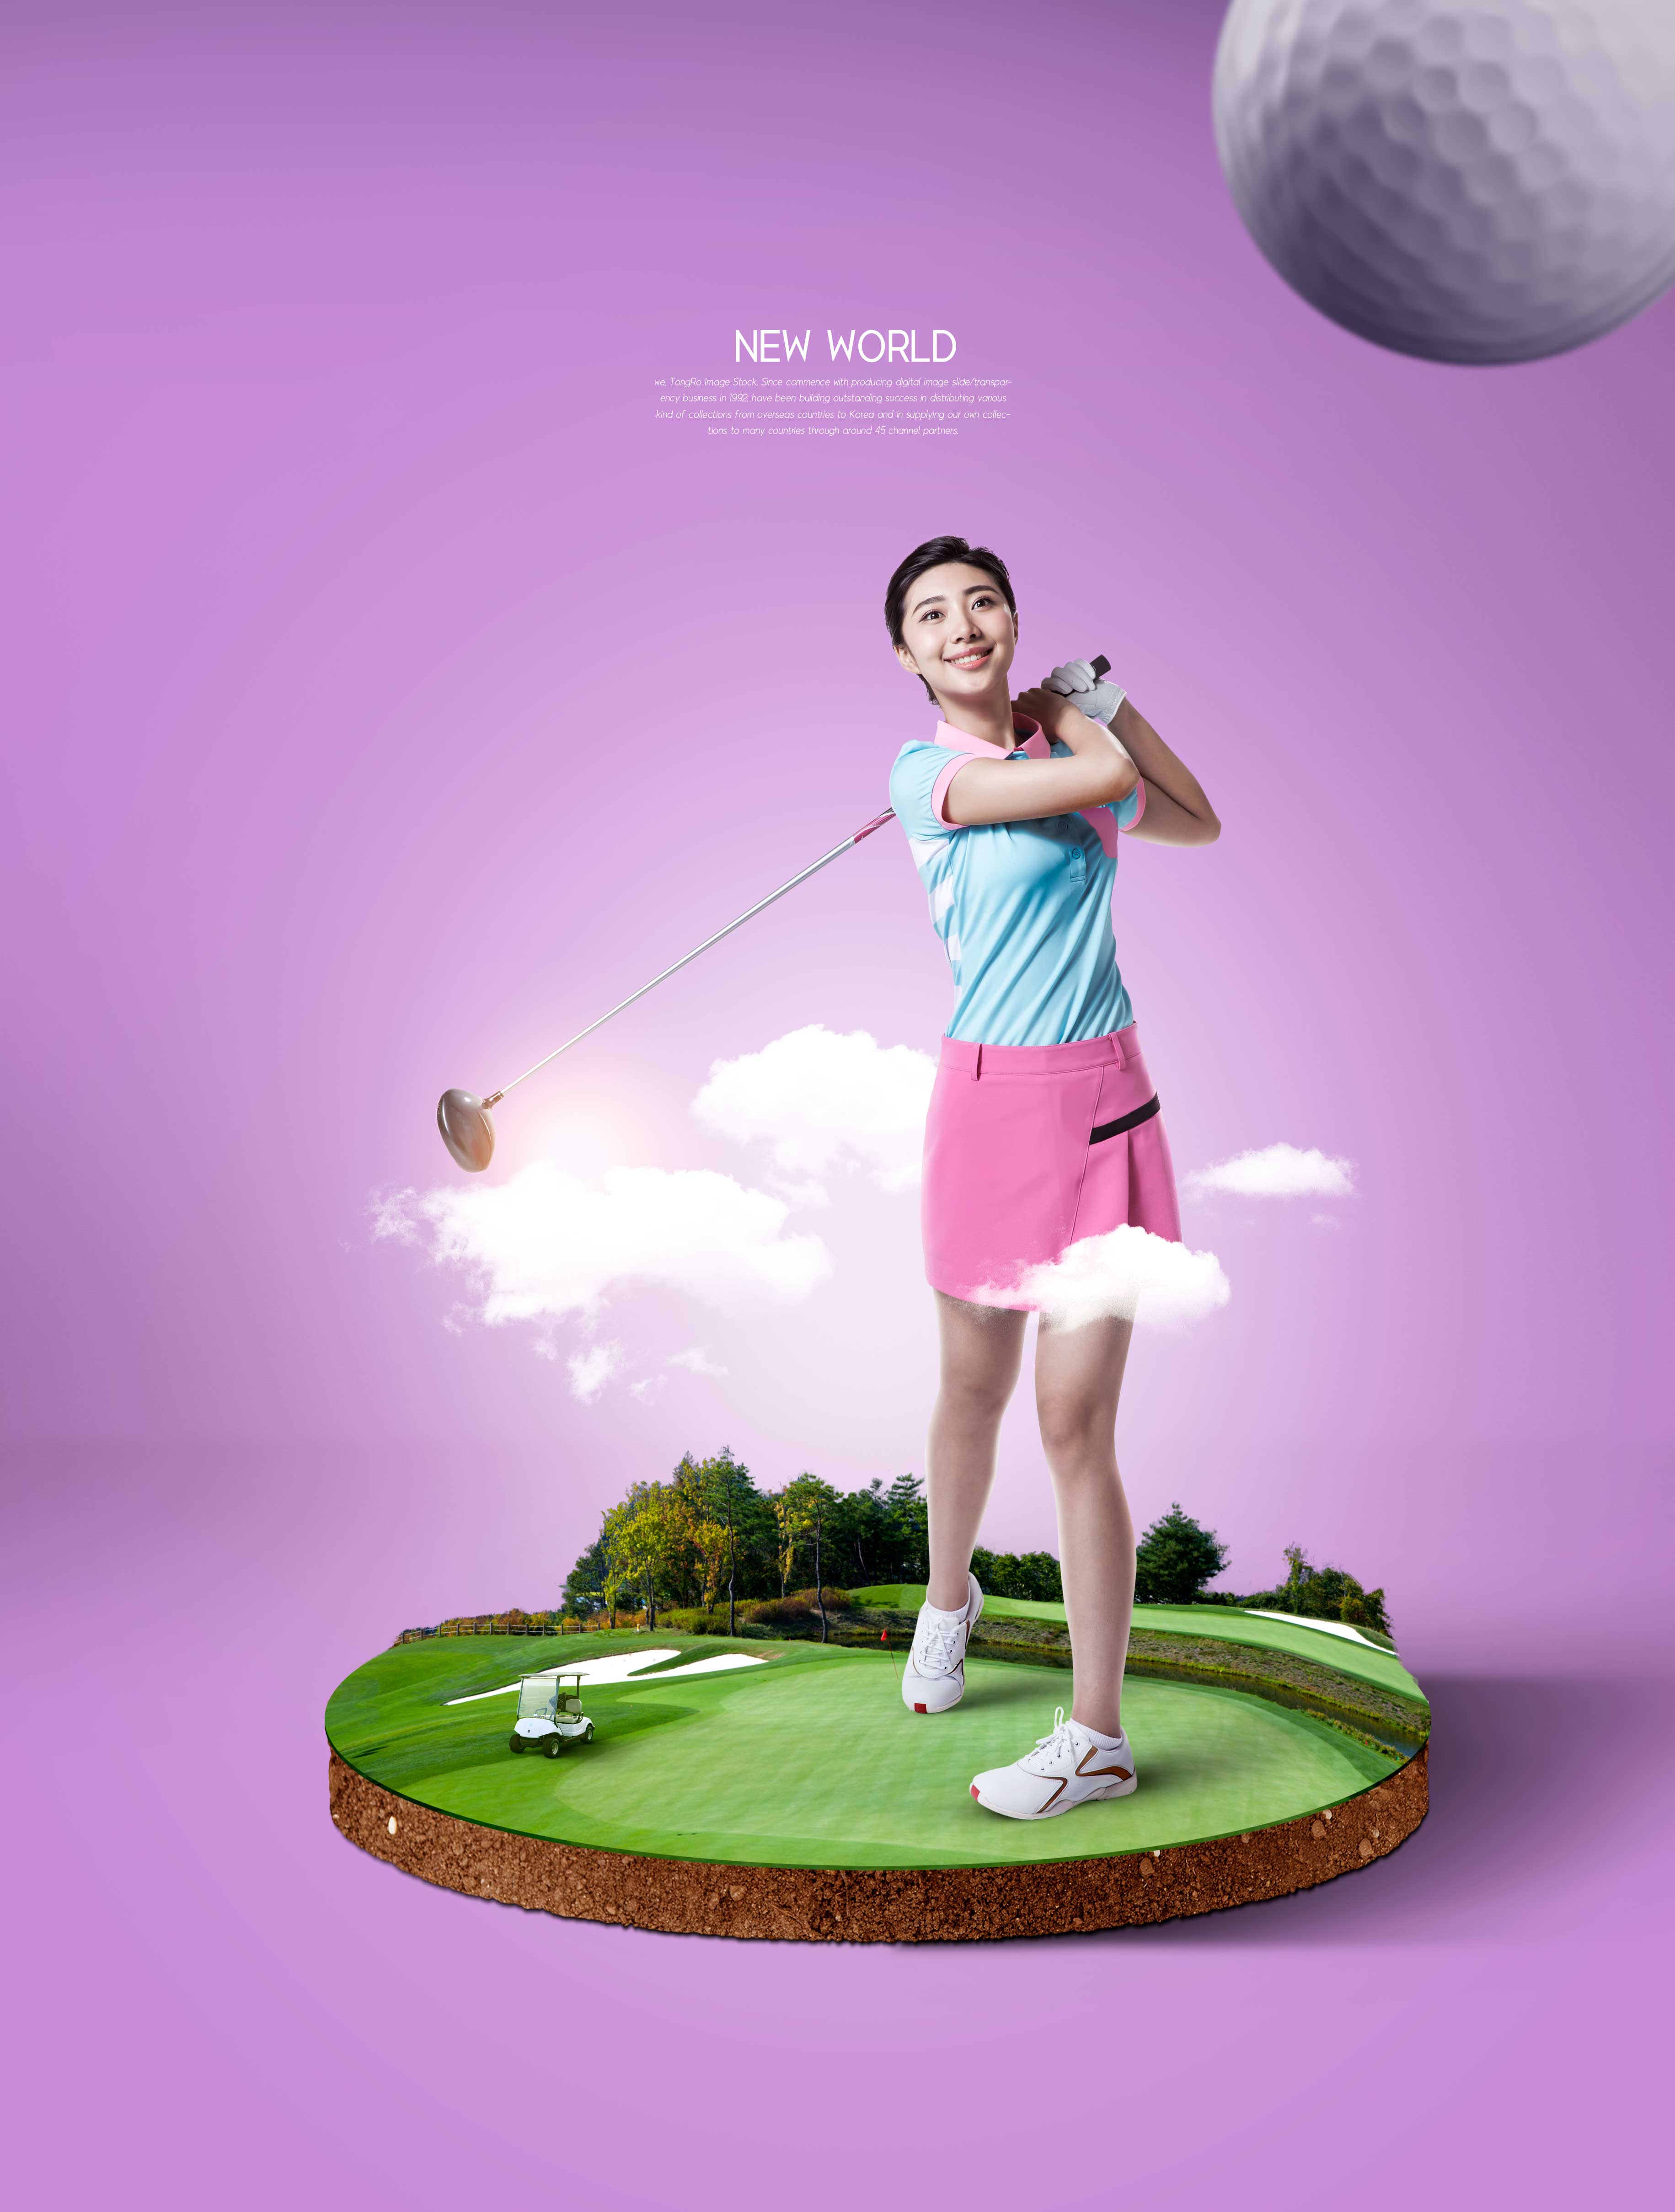 高尔夫球运动推广主题海报图形psd模板设计素材模板